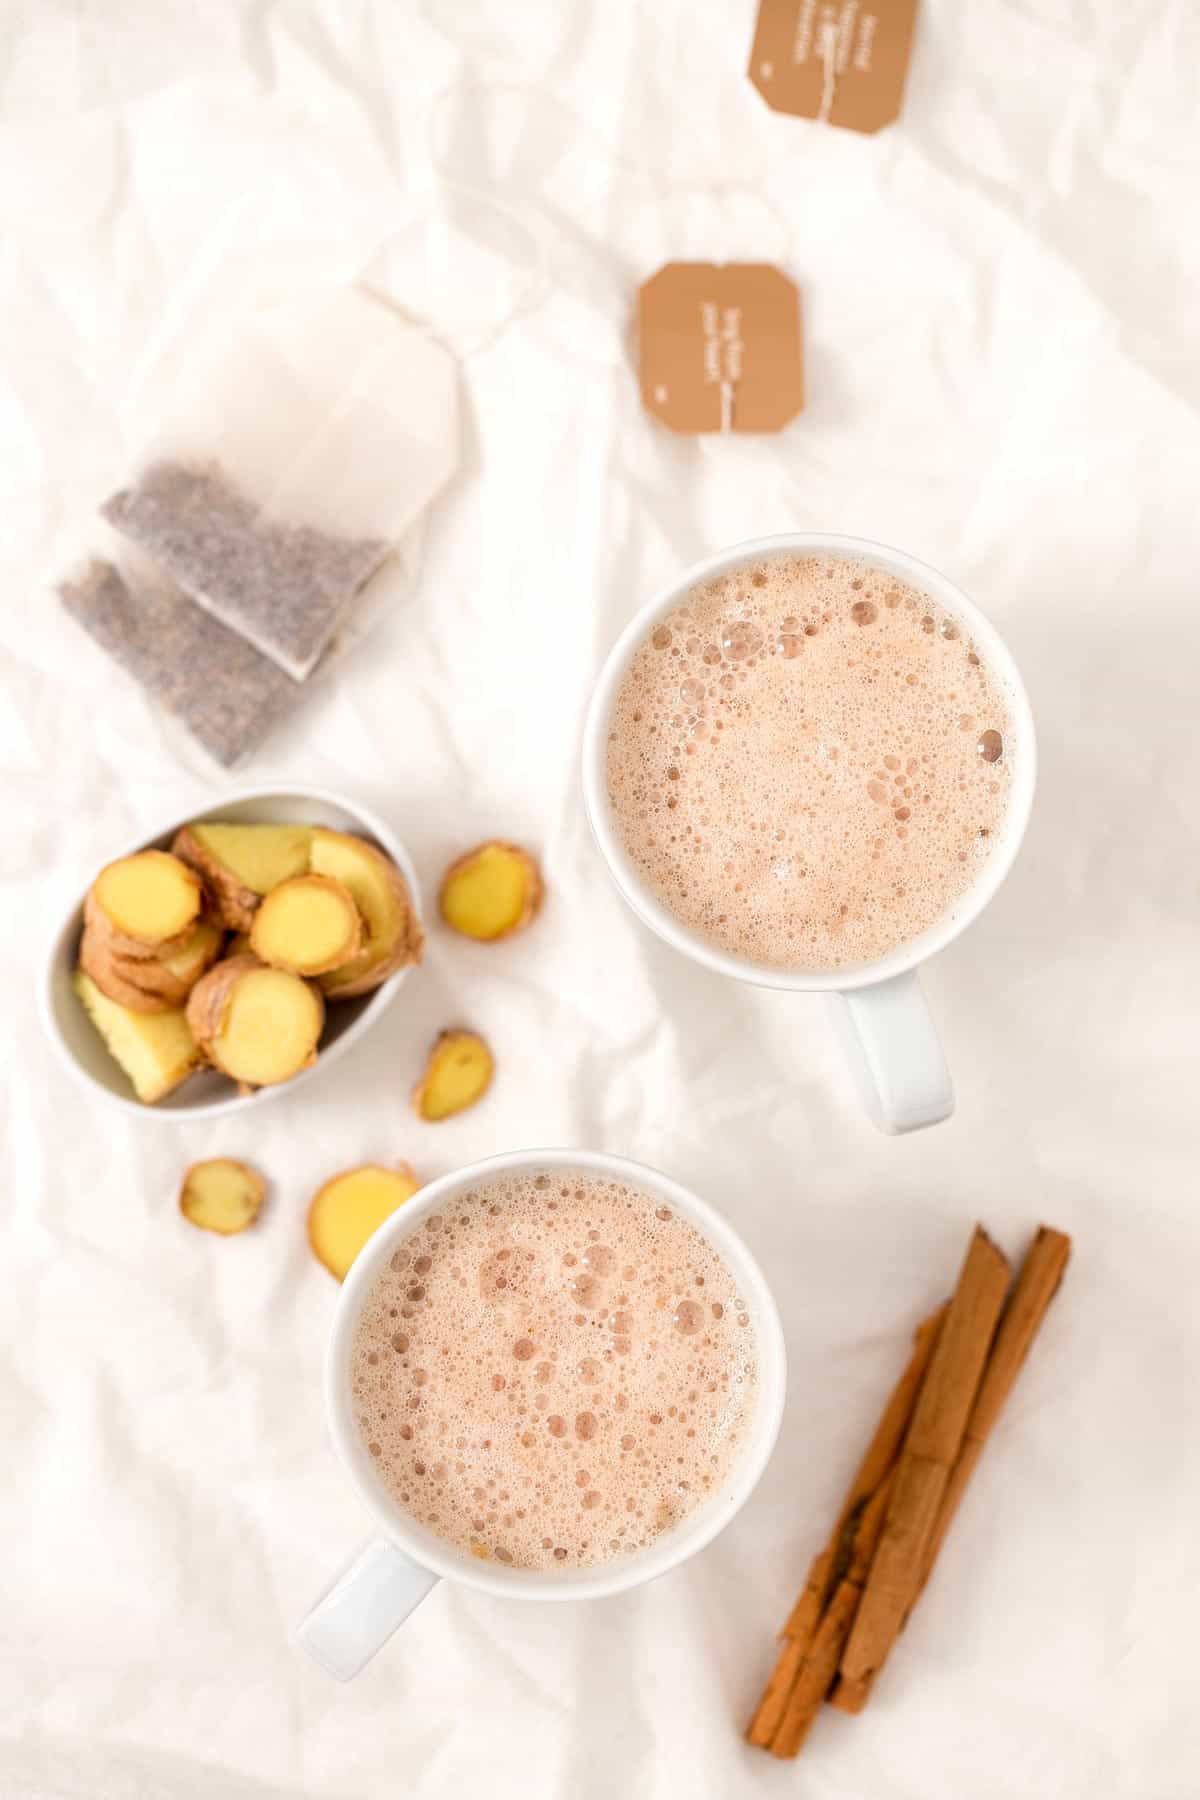 Latte de Jengibre. - El latte de jengibre es una bebida muy sencilla, rica y reconfortante. Es un sustituto saludable al café y se prepara en un momento.